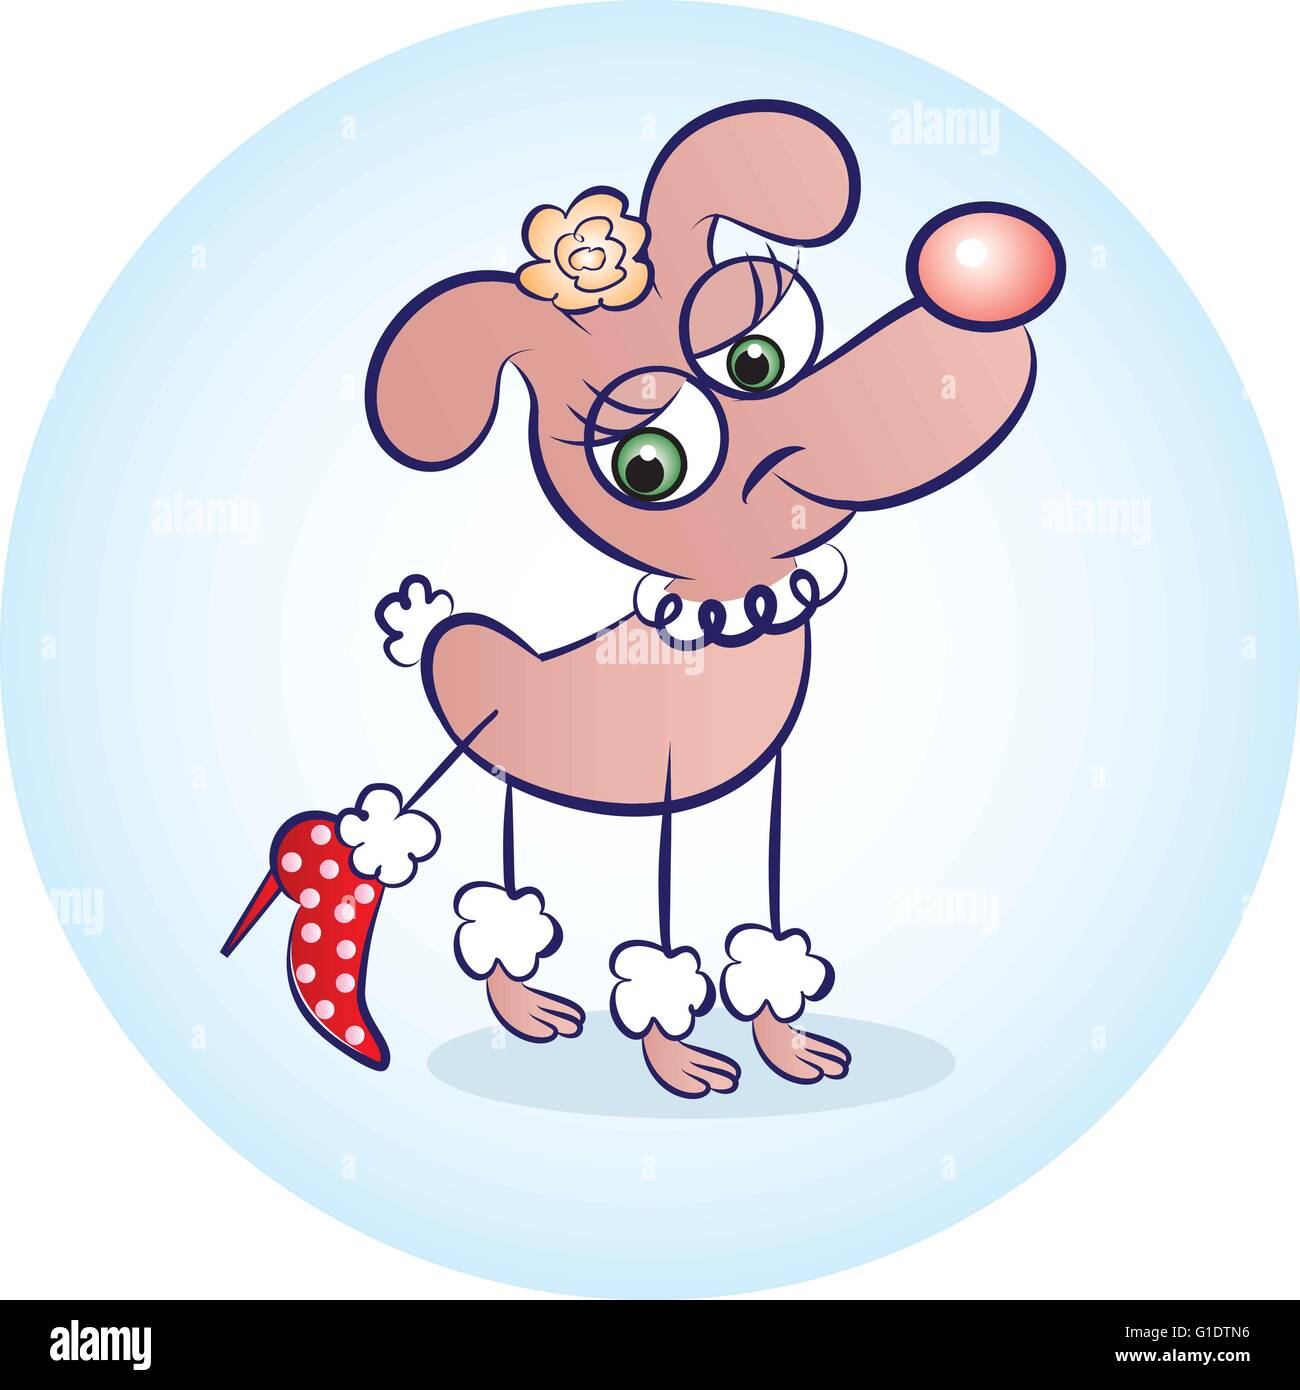 Vektor-Illustration eines ausgefallenen Hundes tragen rote Schuh Stock Vektor